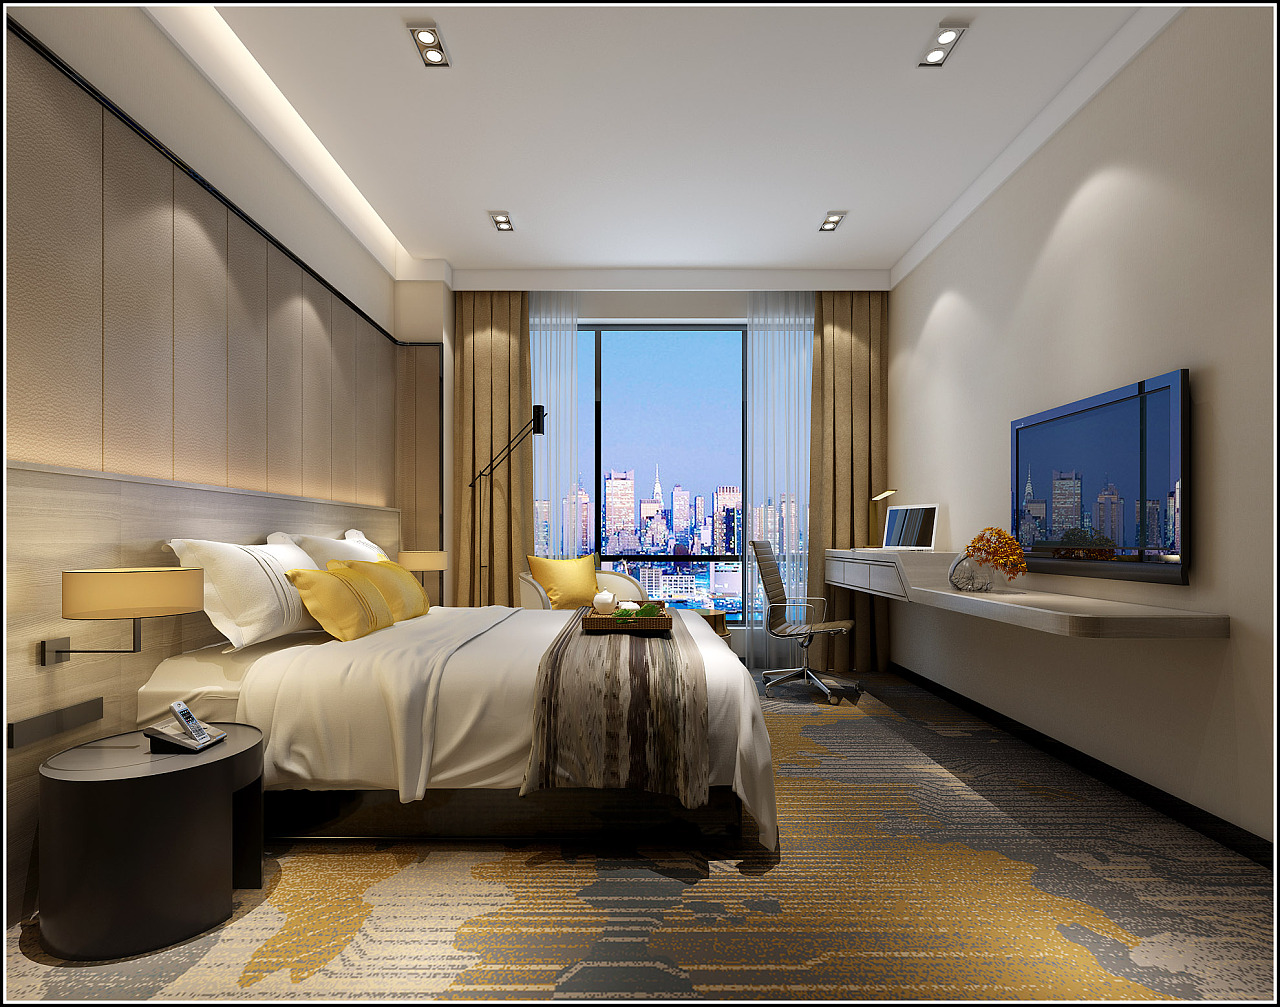 现代酒店外观设计 - 效果图交流区-建E室内设计网